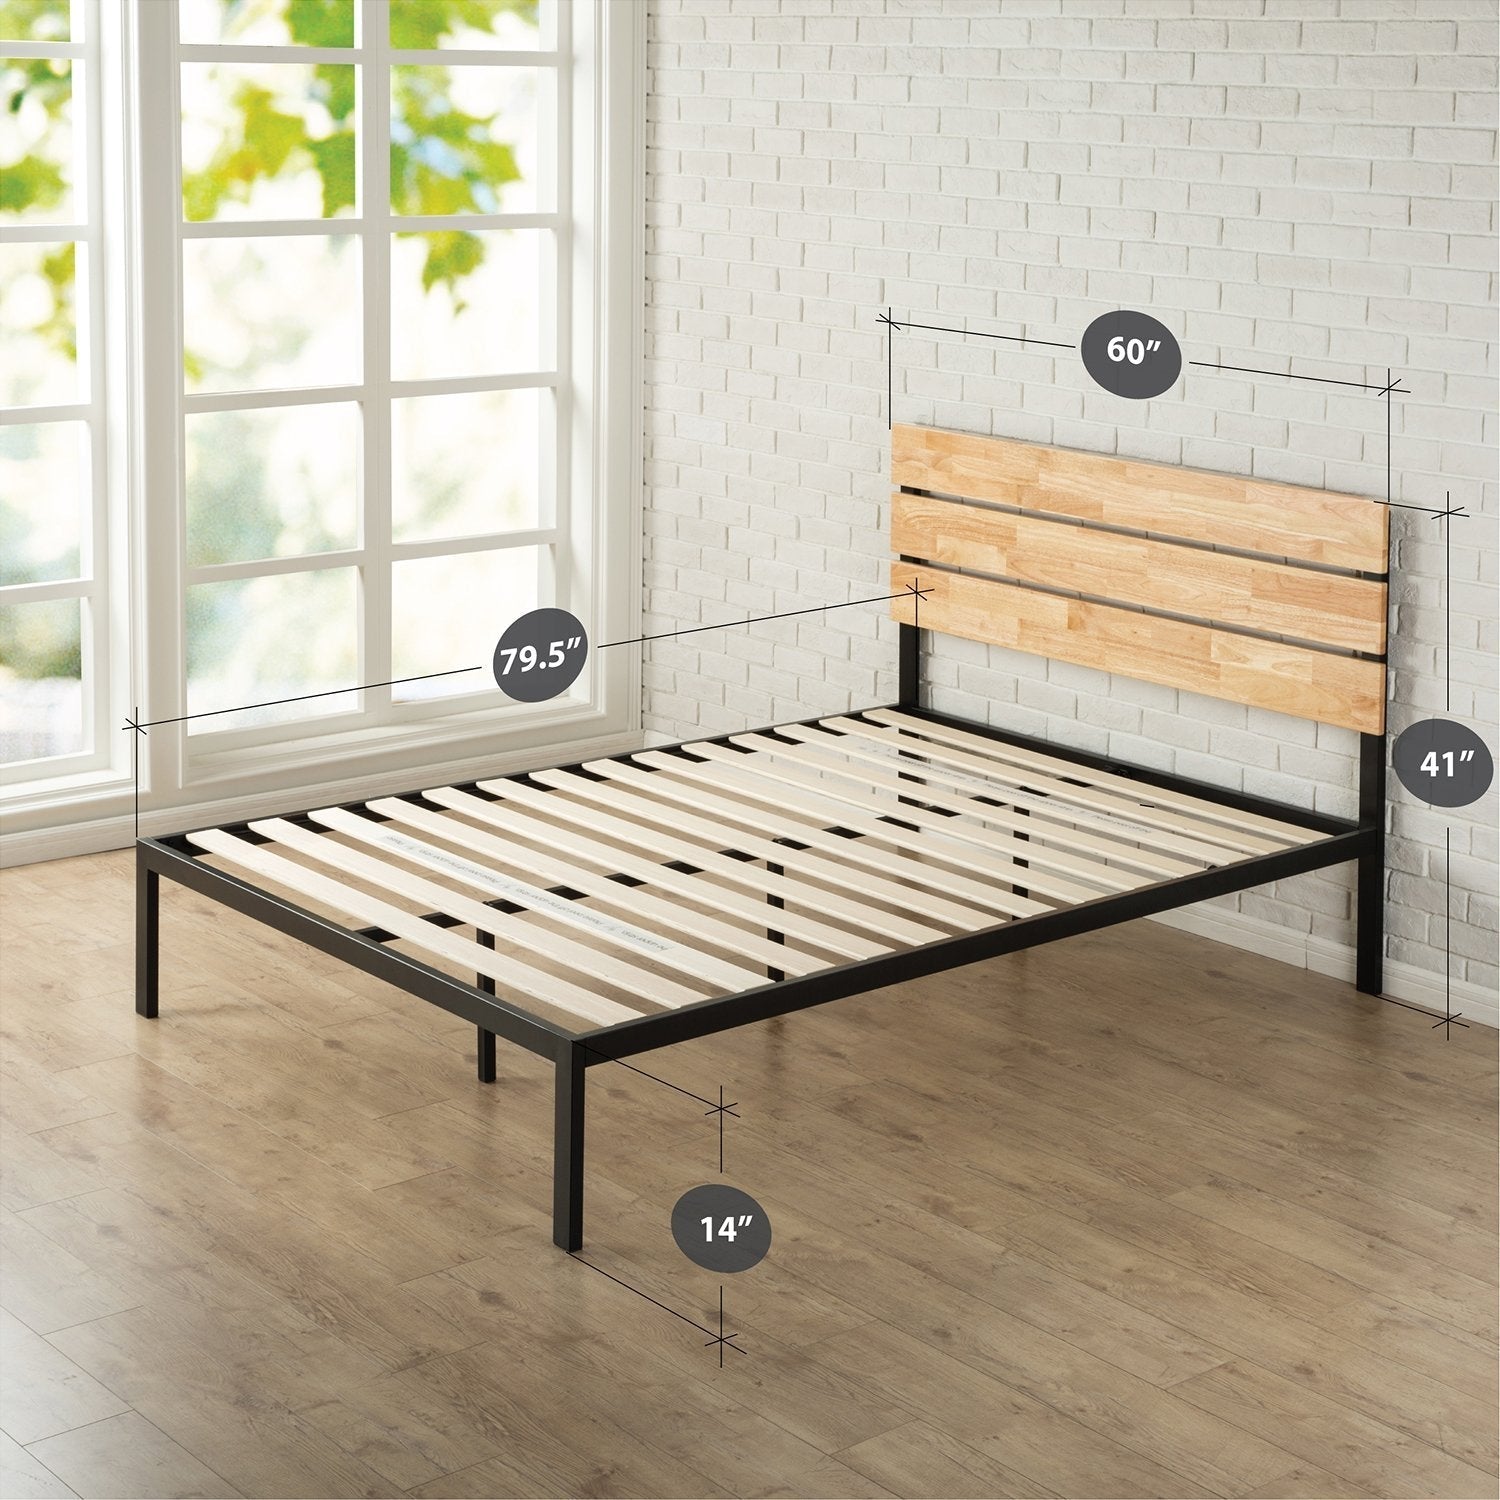 Bedroom > Bed Frames > Platform Beds - Queen Size Modern Wood And Metal Platform Bed Frame With Headboard